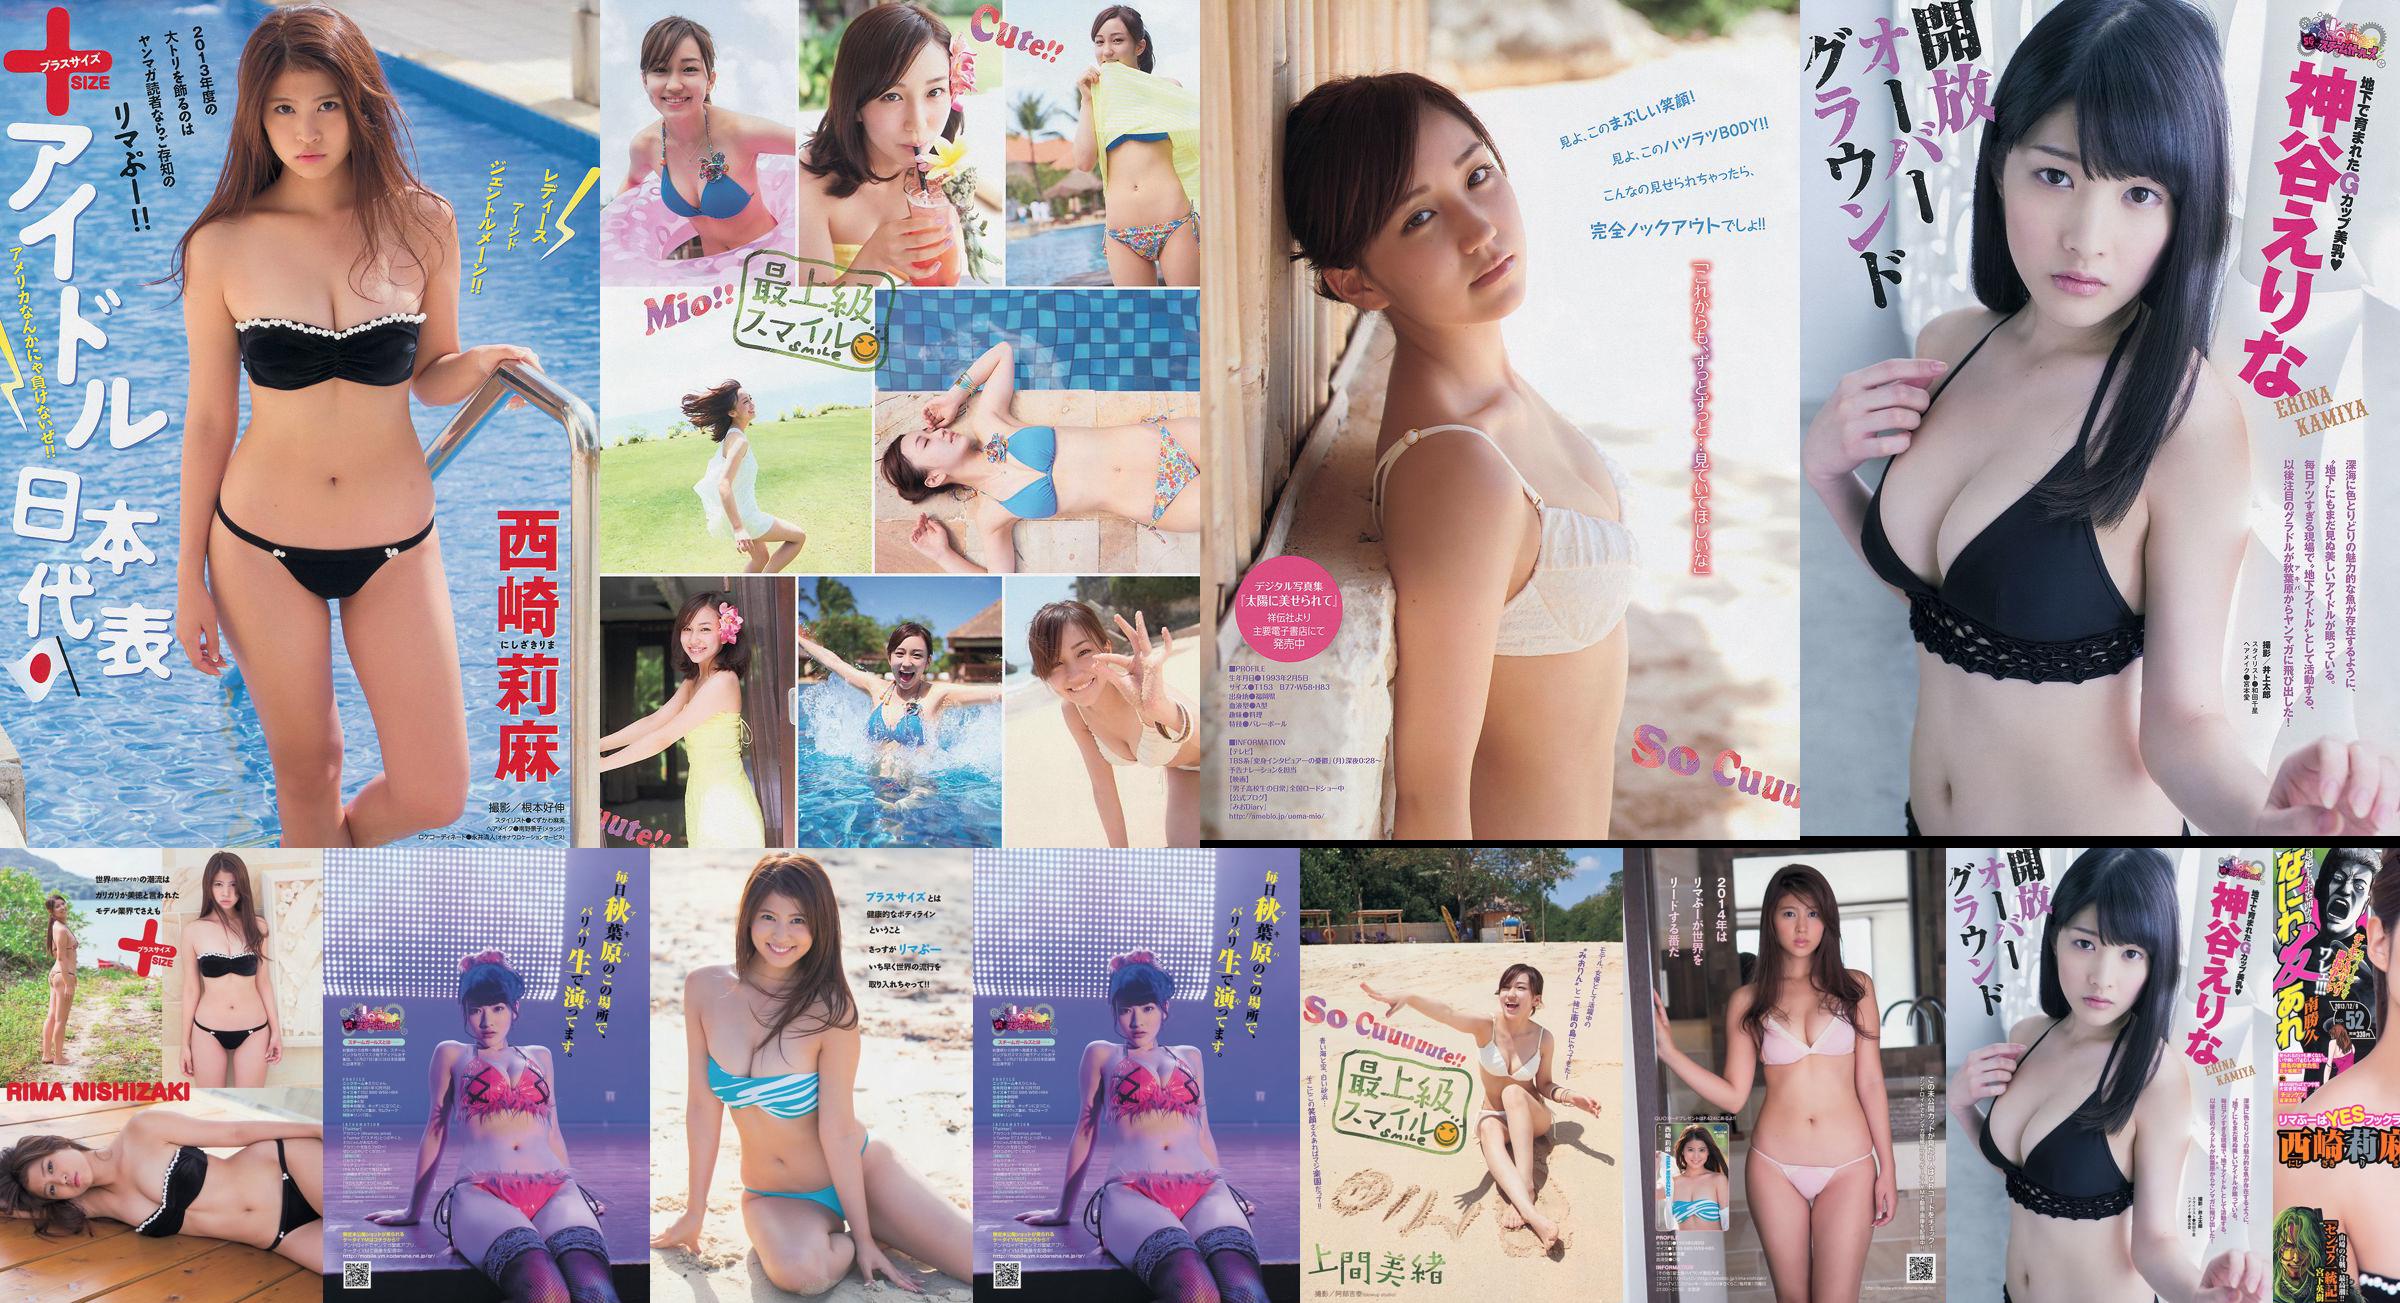 [Revista joven] Rima Nishizaki Mio Uema Erina Kamiya 2013 No.52 Photo Moshi No.22bb74 Página 4